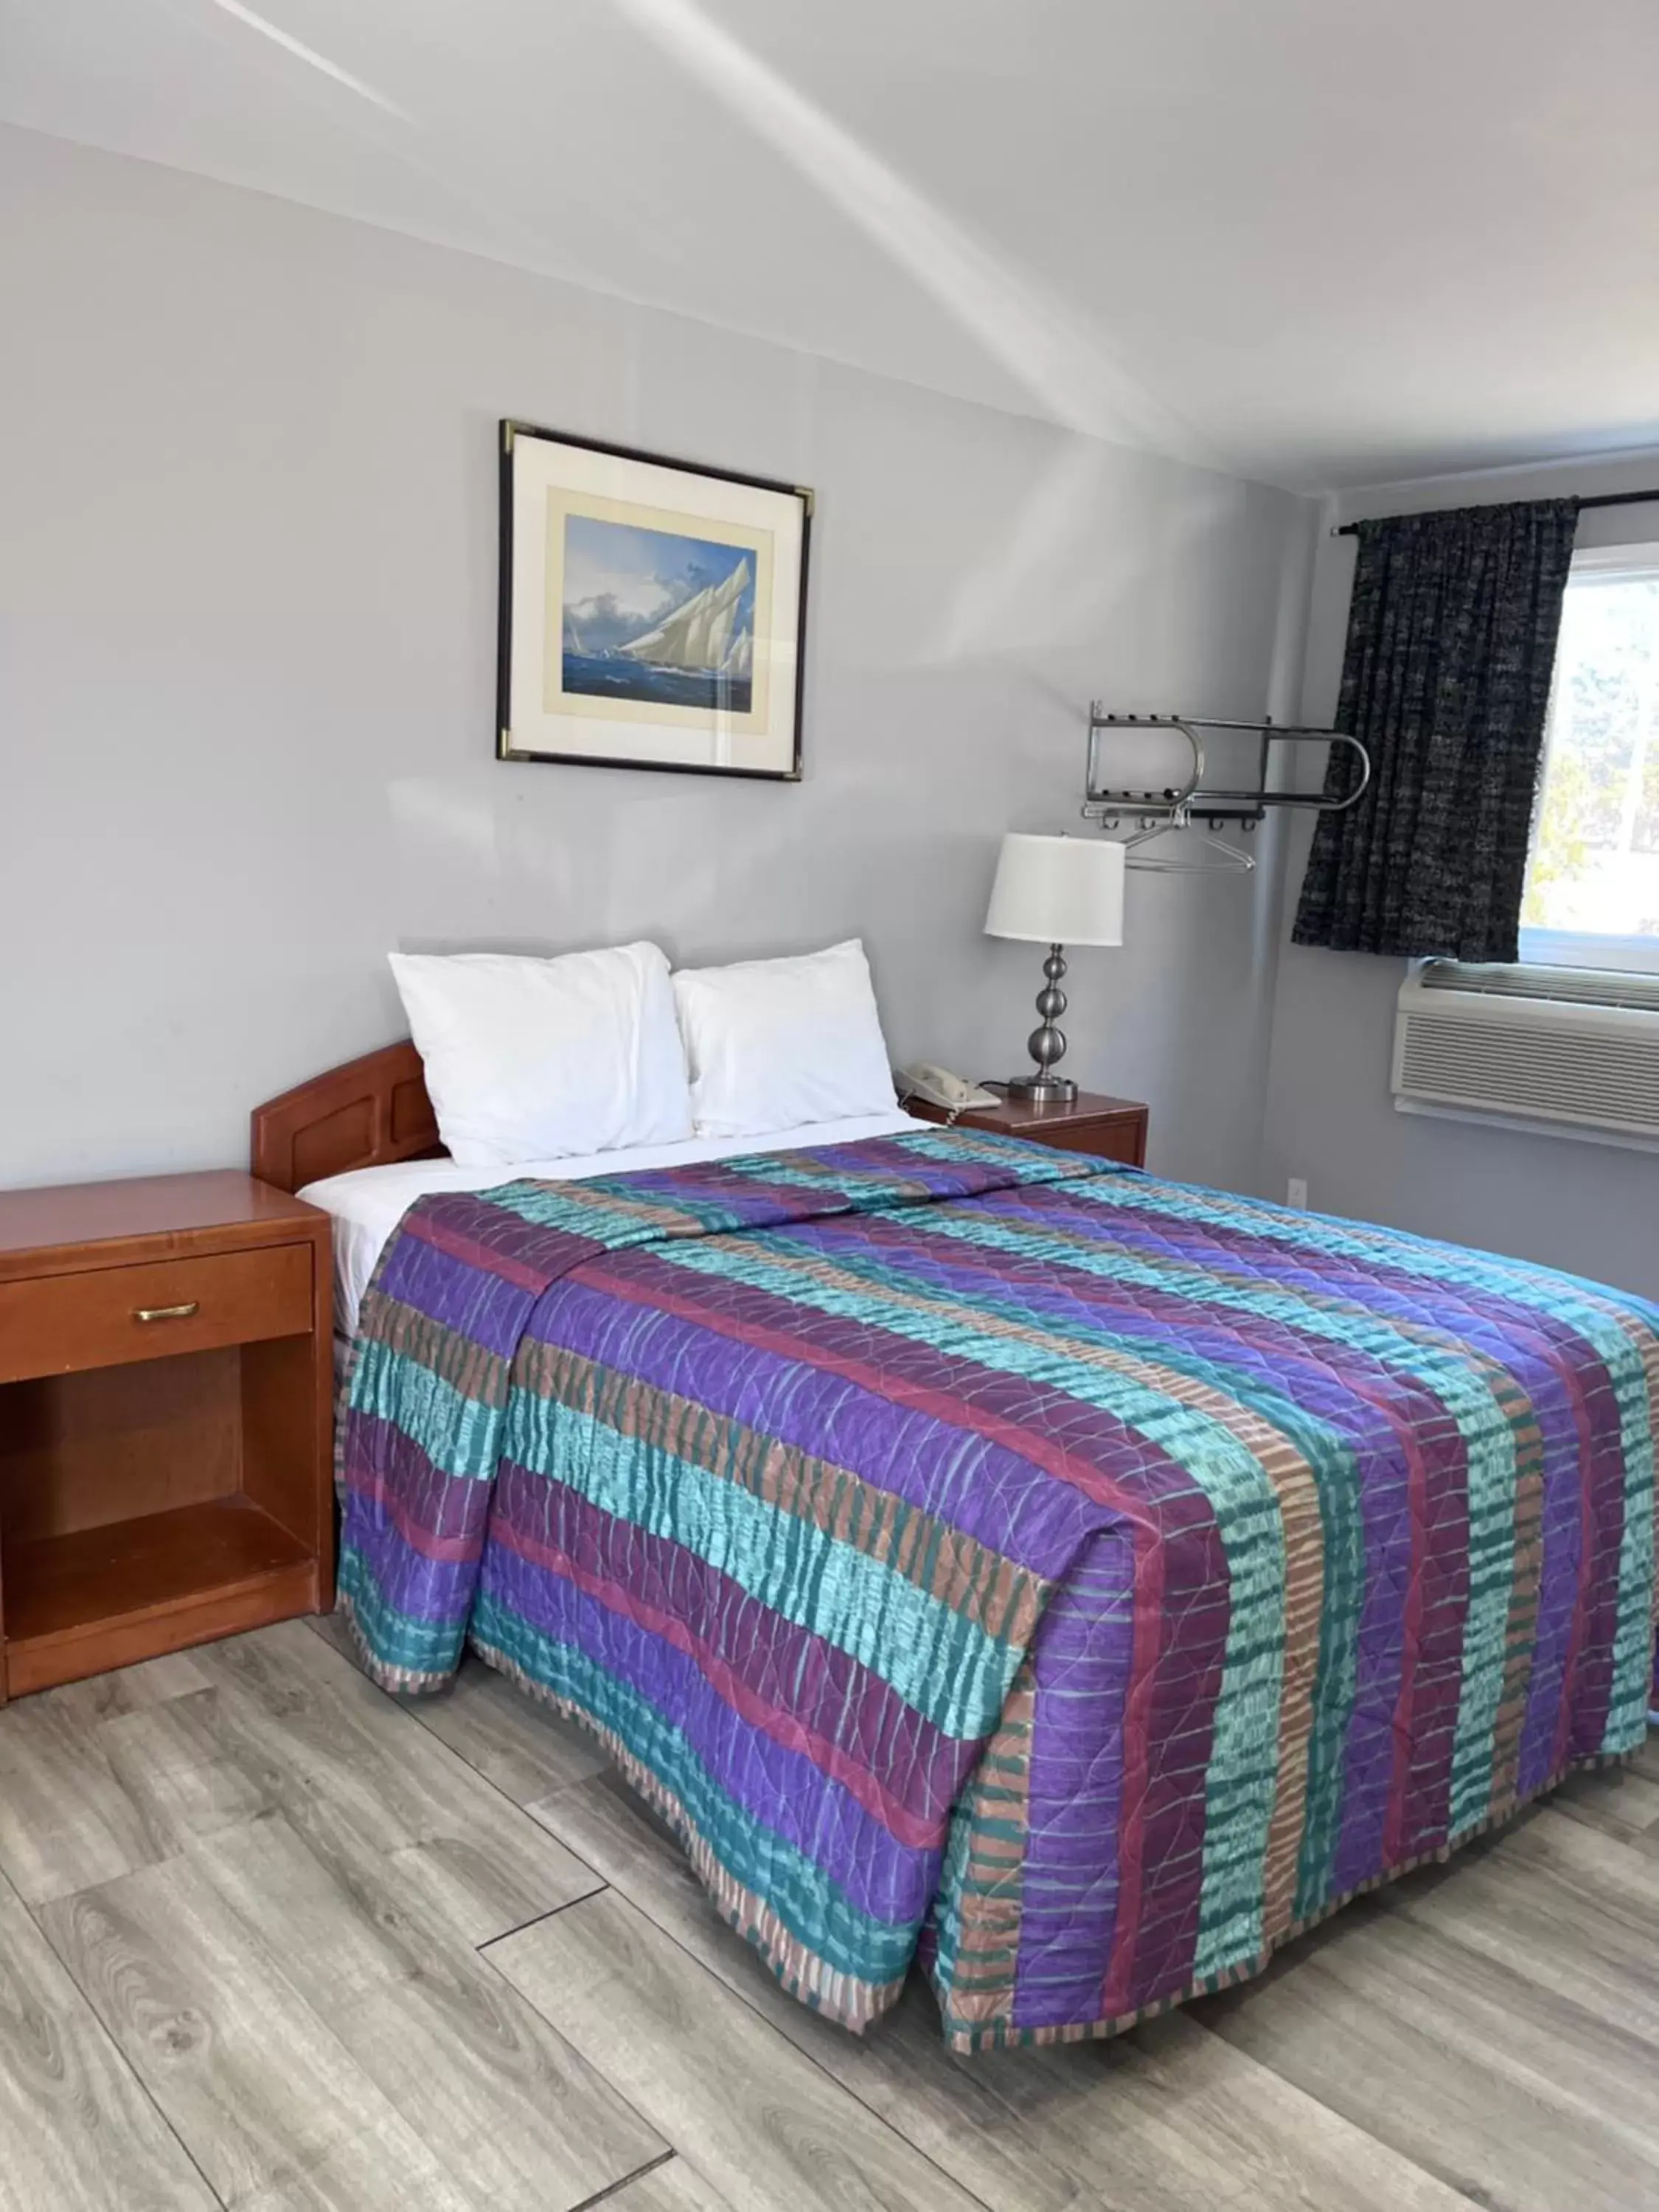 Bed in Knights Inn - Park Villa Motel, Midland